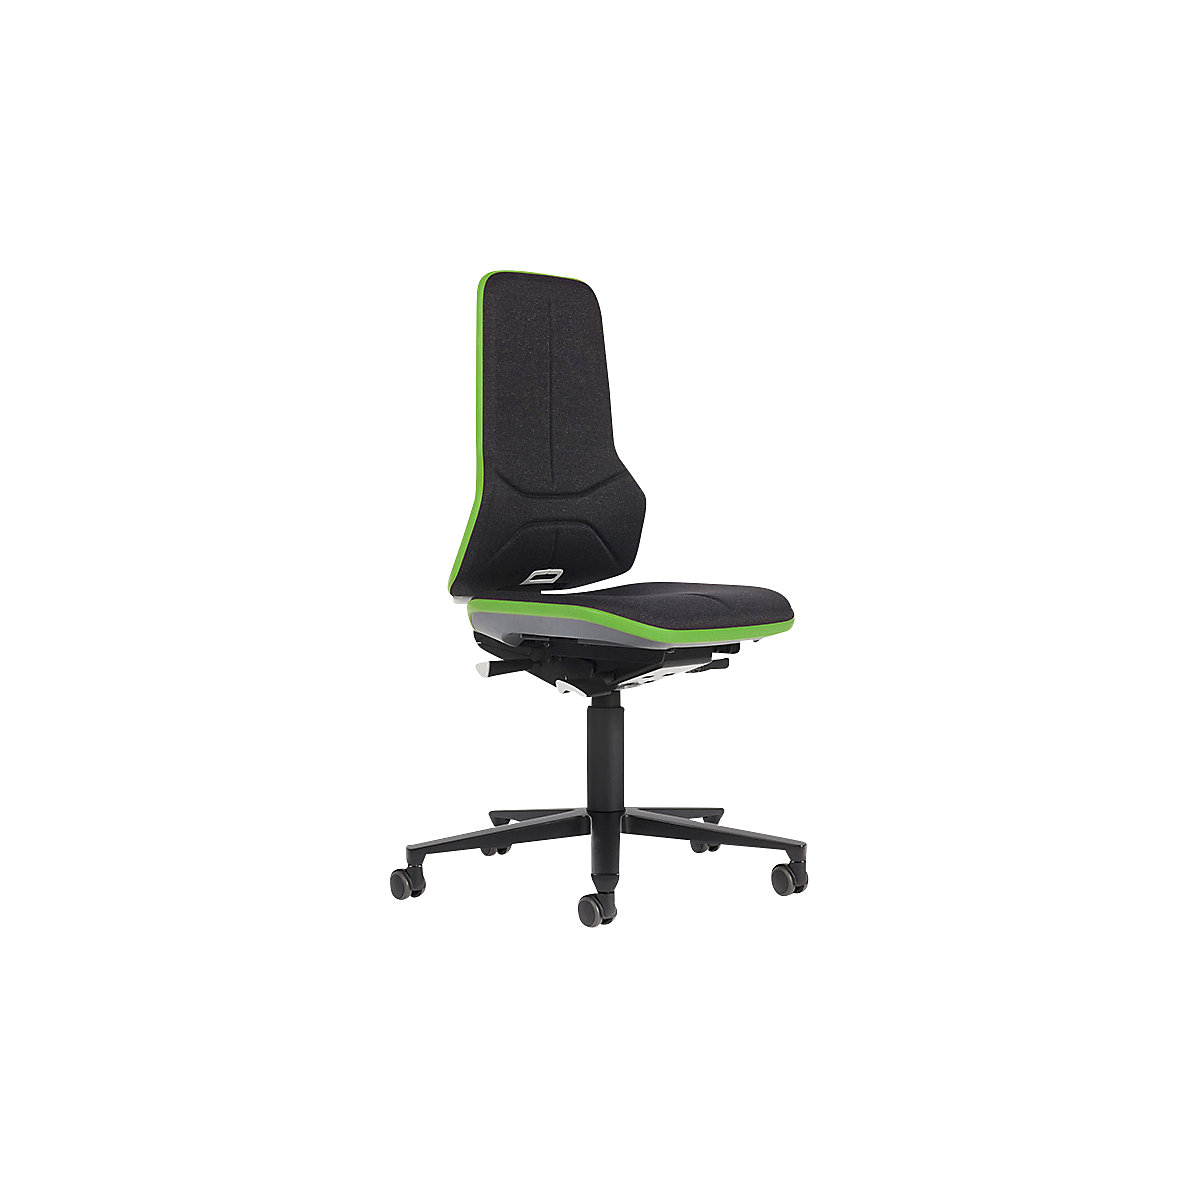 Pracovní otočná židle NEON, kolečka – bimos, synchronní mechanika, látka, zelený flexibilní pás-6